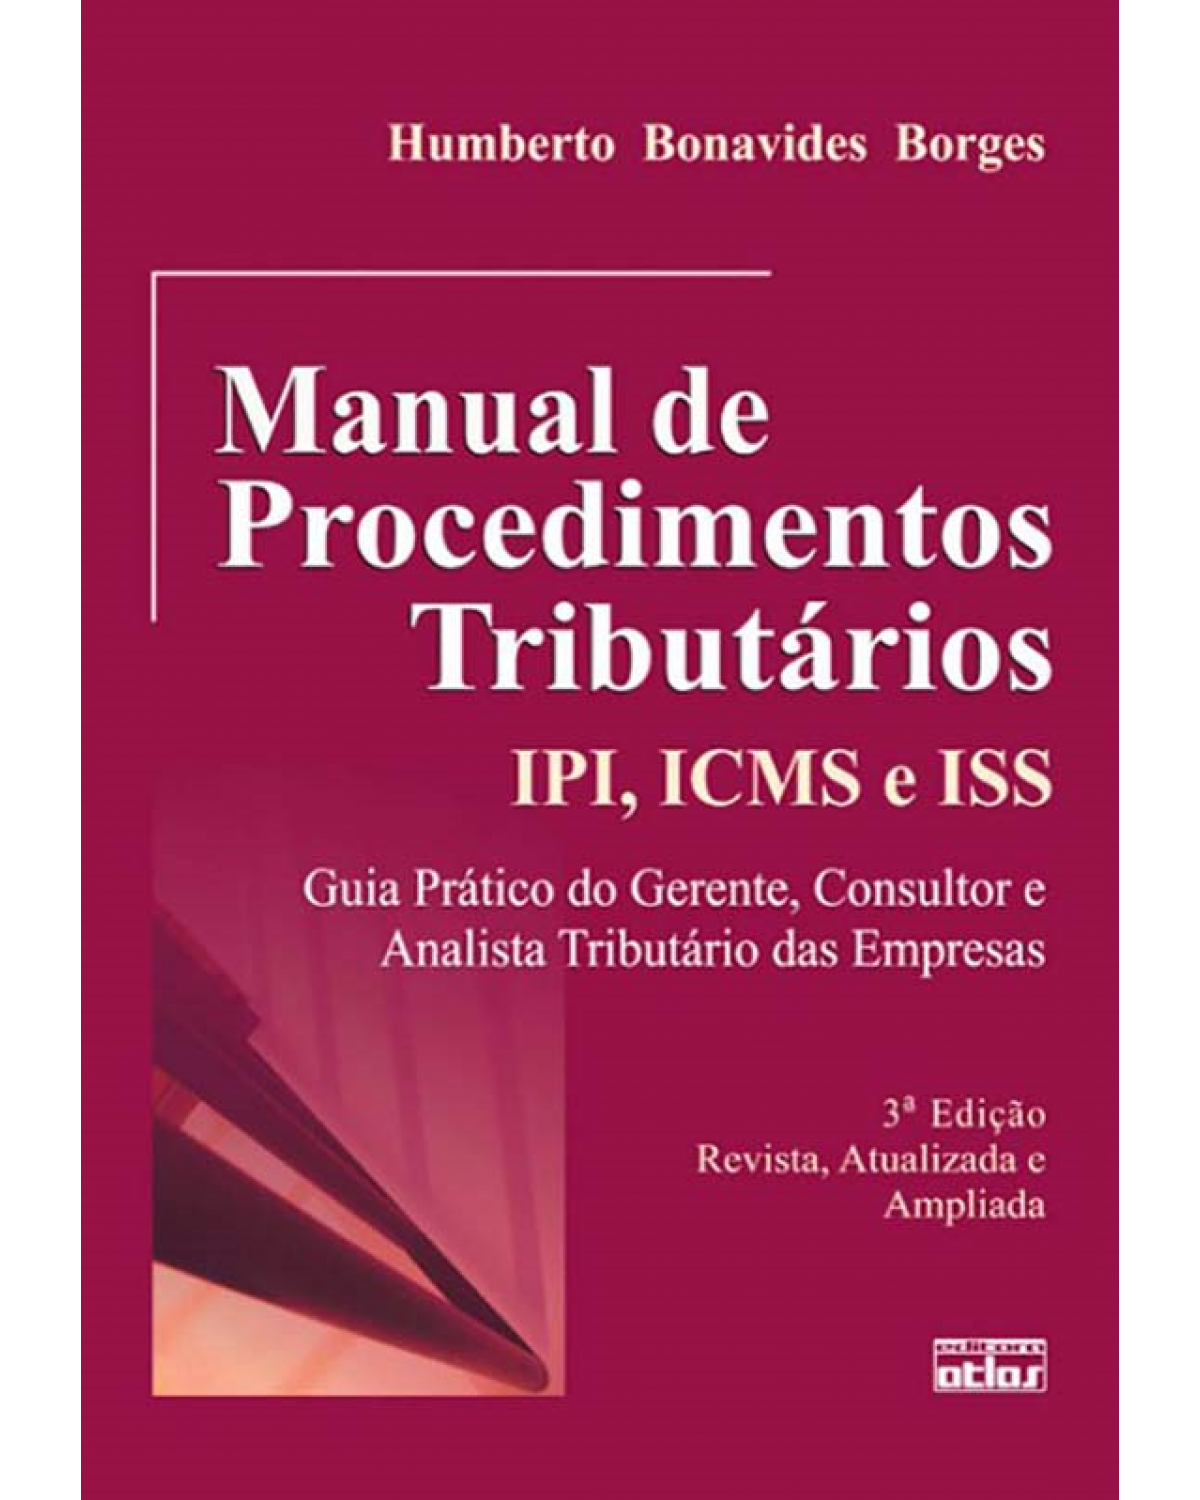 Manual de procedimentos tributários - IPI, ICMS e ISS - 3ª Edição | 2009